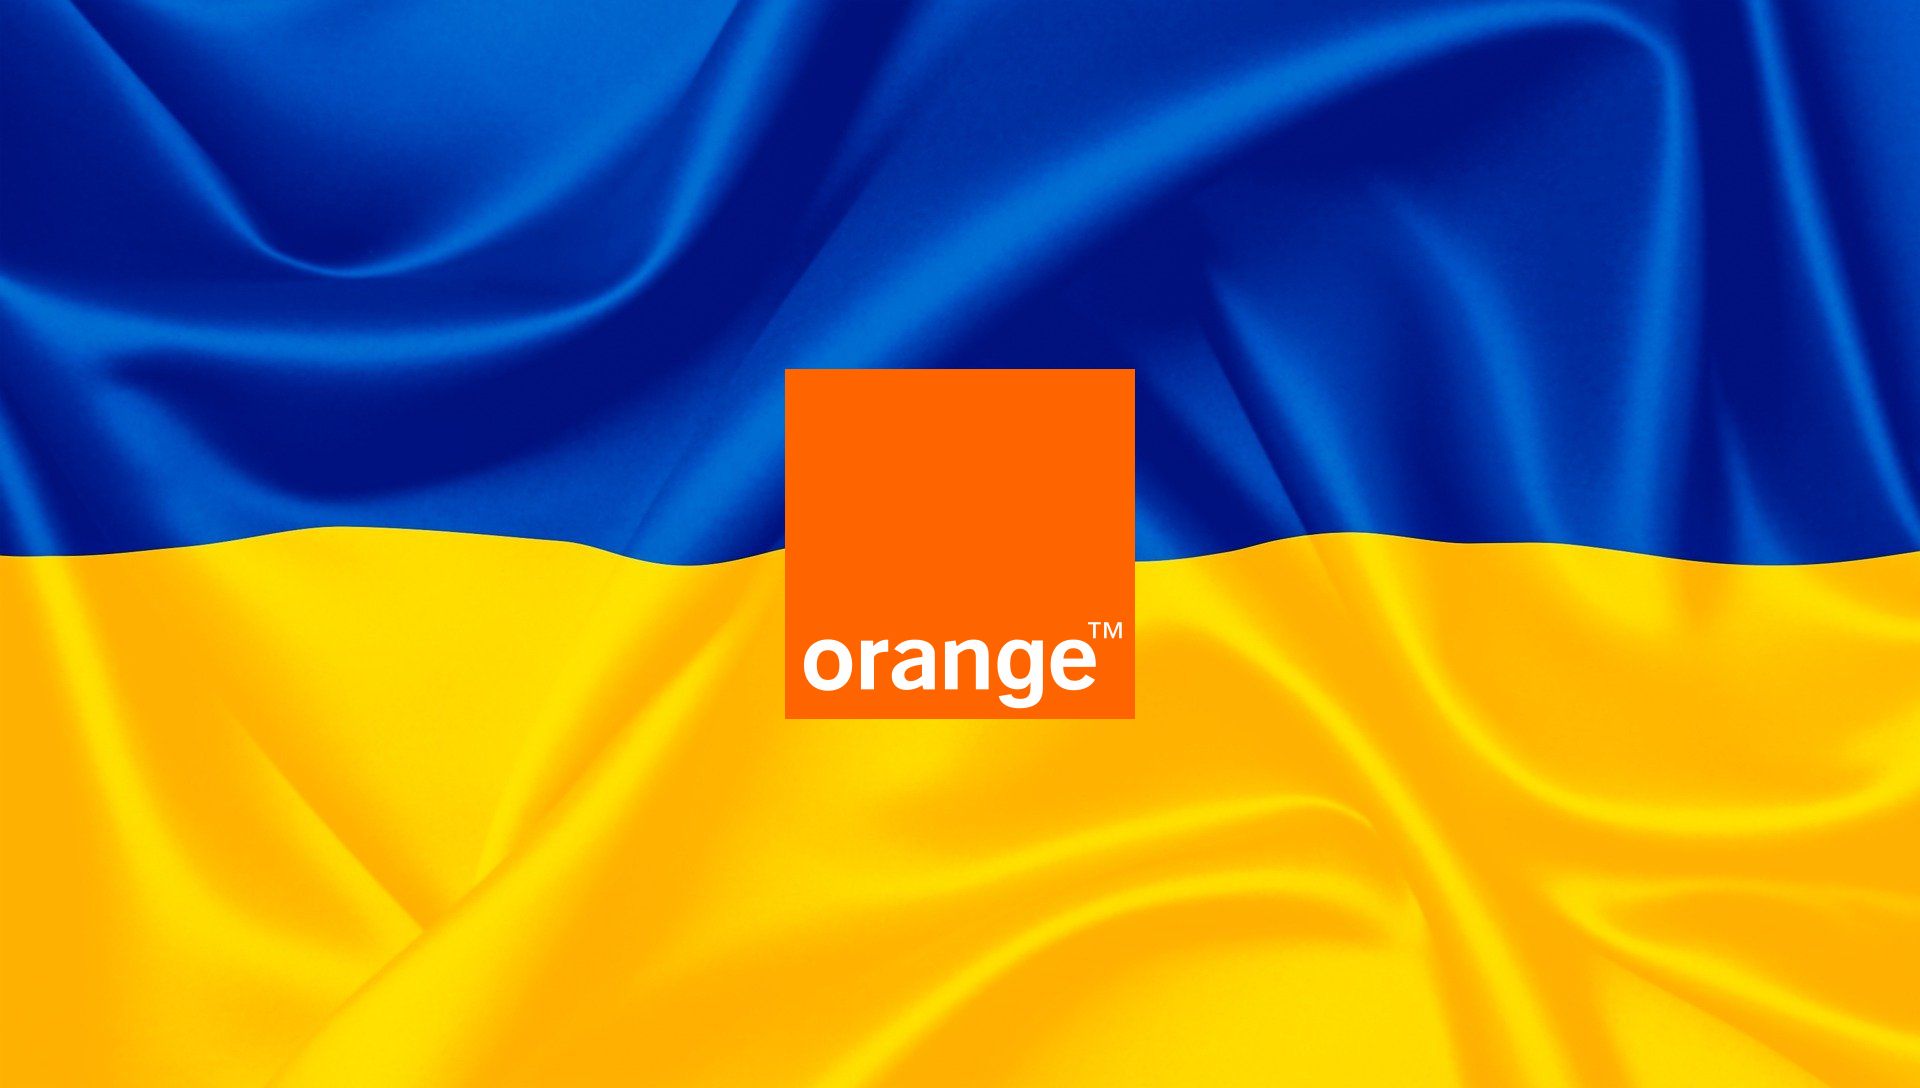 flaga Ukrainy Ukraina flag Ukraine Orange logo